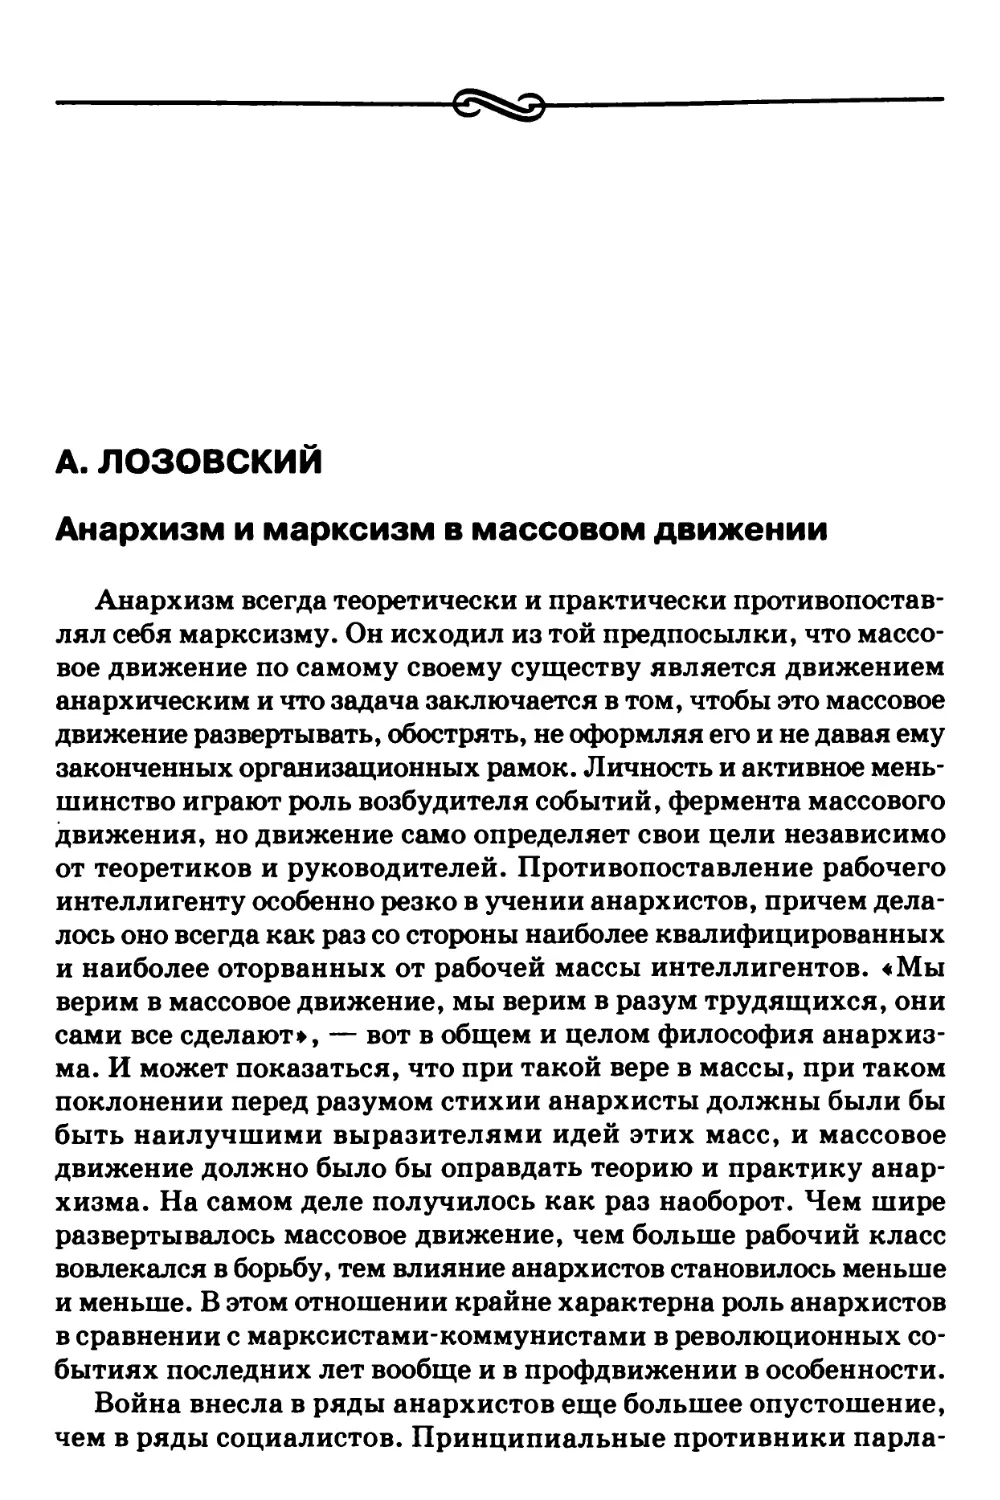 А. Лозовский – Анархизм и марксизм в массовом движении